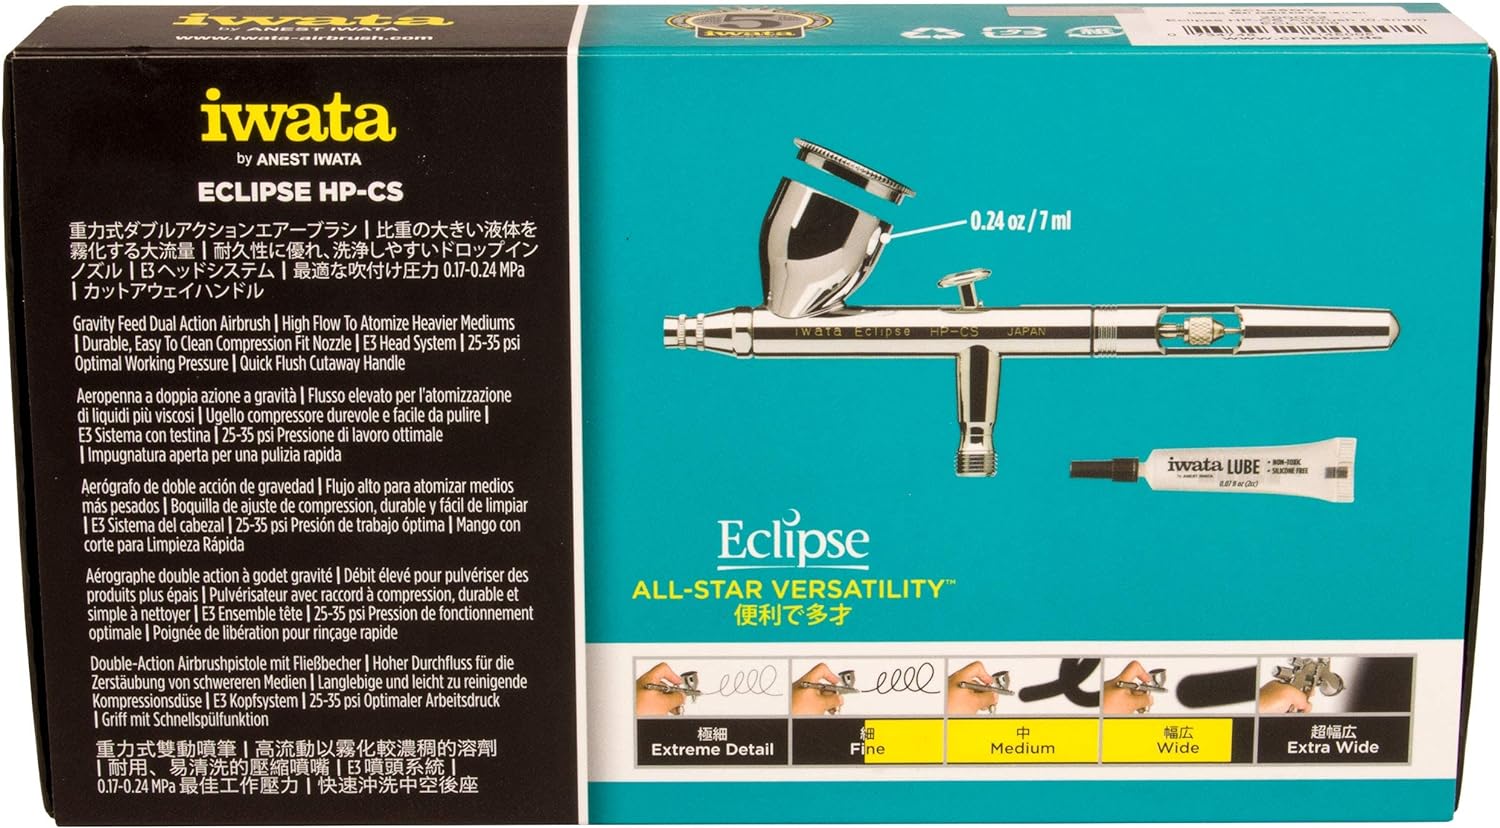 Iwata Medea Eclipse HP CS Dual Action Airbrush Gun Gravity Feed